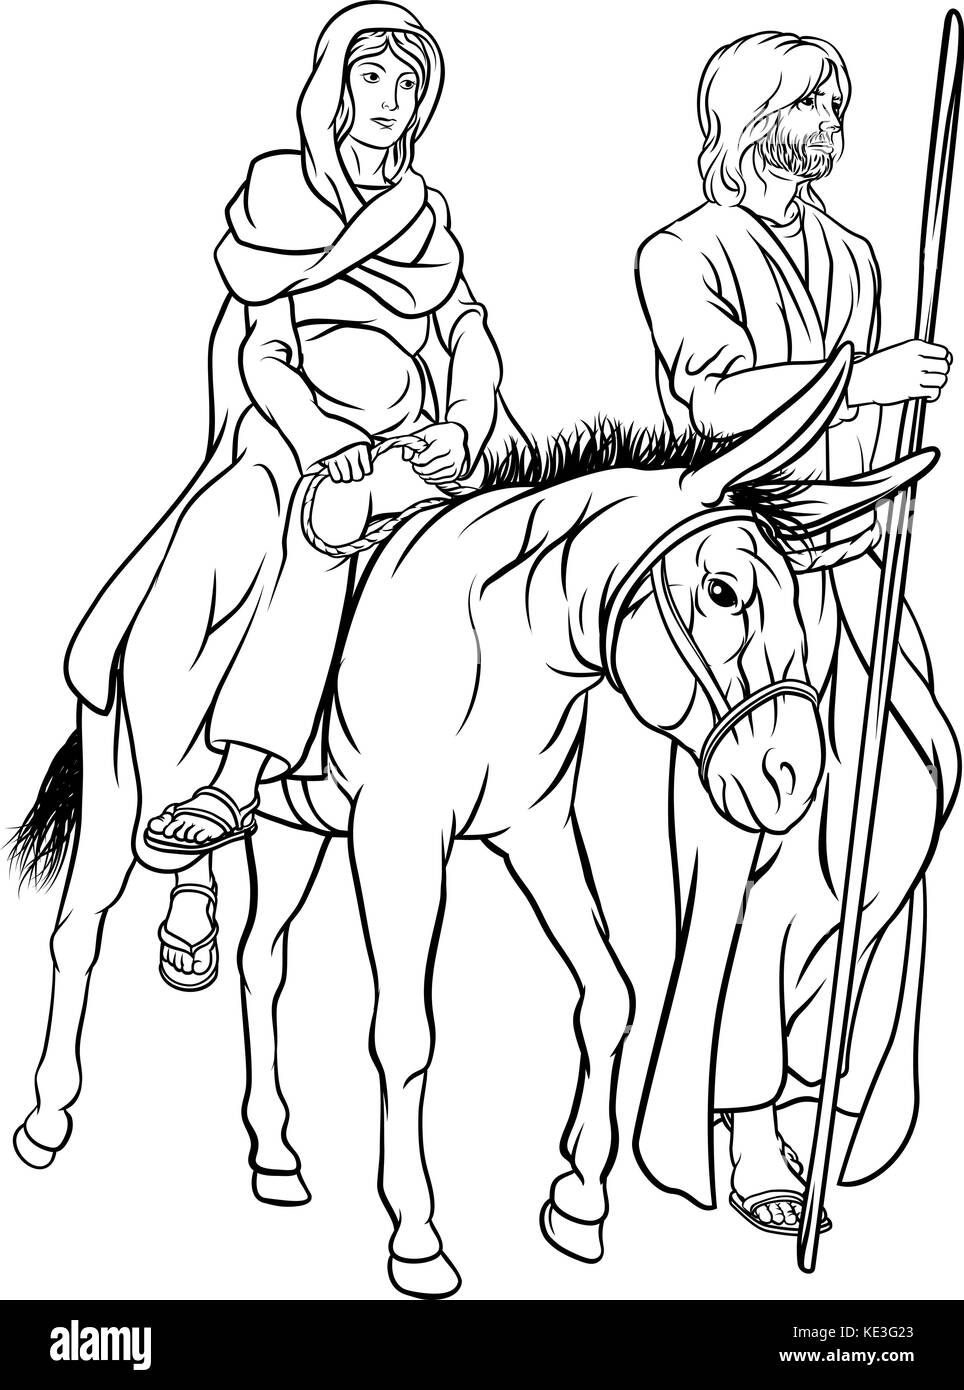 Nativité chrétienne religieuse illustration de Noël de Joseph et de la Vierge Marie mère de Jésus à cheval sur un âne dans leur voyage dans le désert Illustration de Vecteur